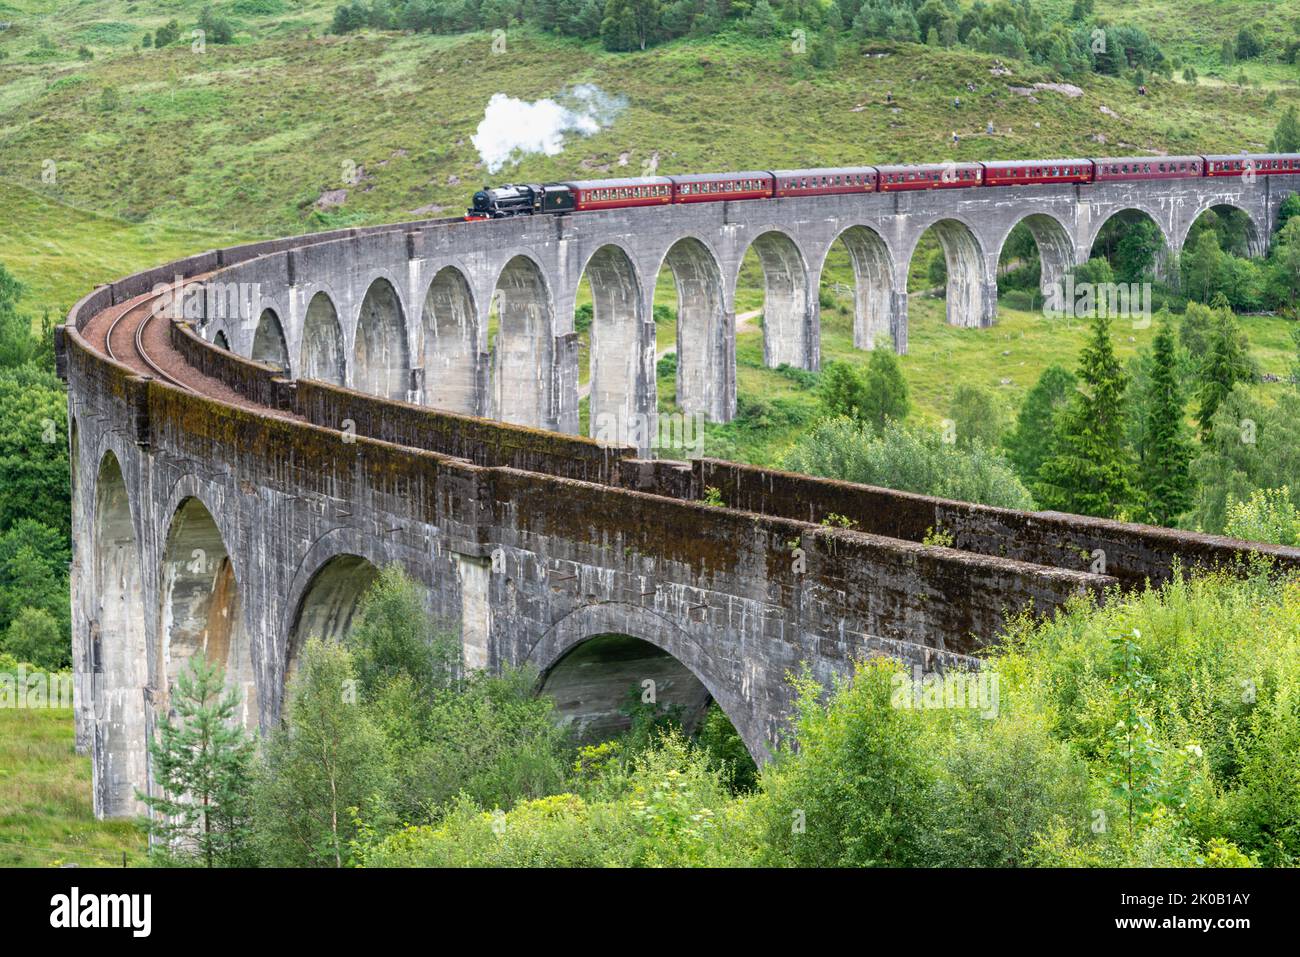 Die Jacobite Dampflokomotive, Touristenzug, beginnt, die ikonische Viaduktbrücke zu überqueren, auf der West Highland Line, beliebtes Touristenziel Wahrzeichen, durch Stockfoto